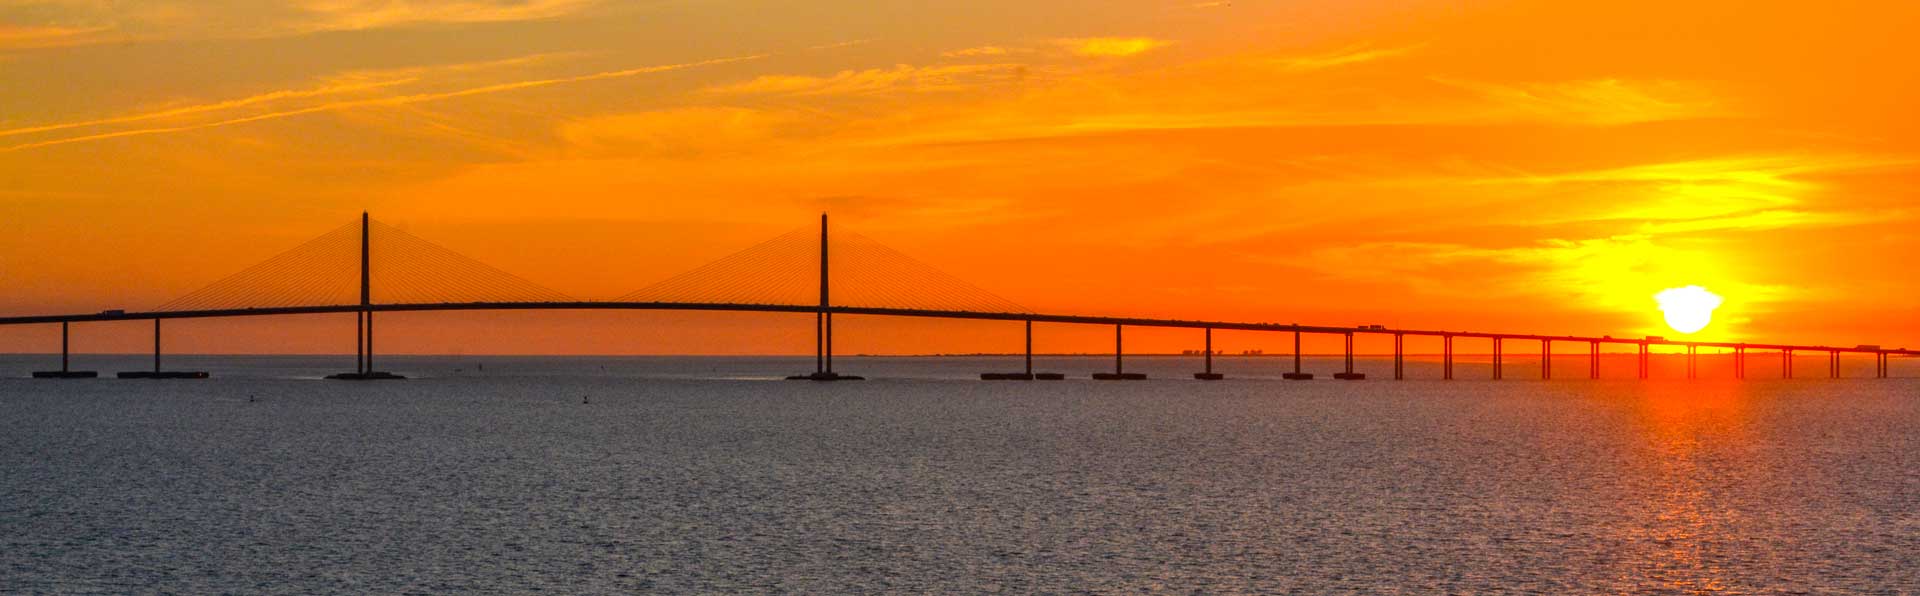 Florida Sunshine Skyway Bridge